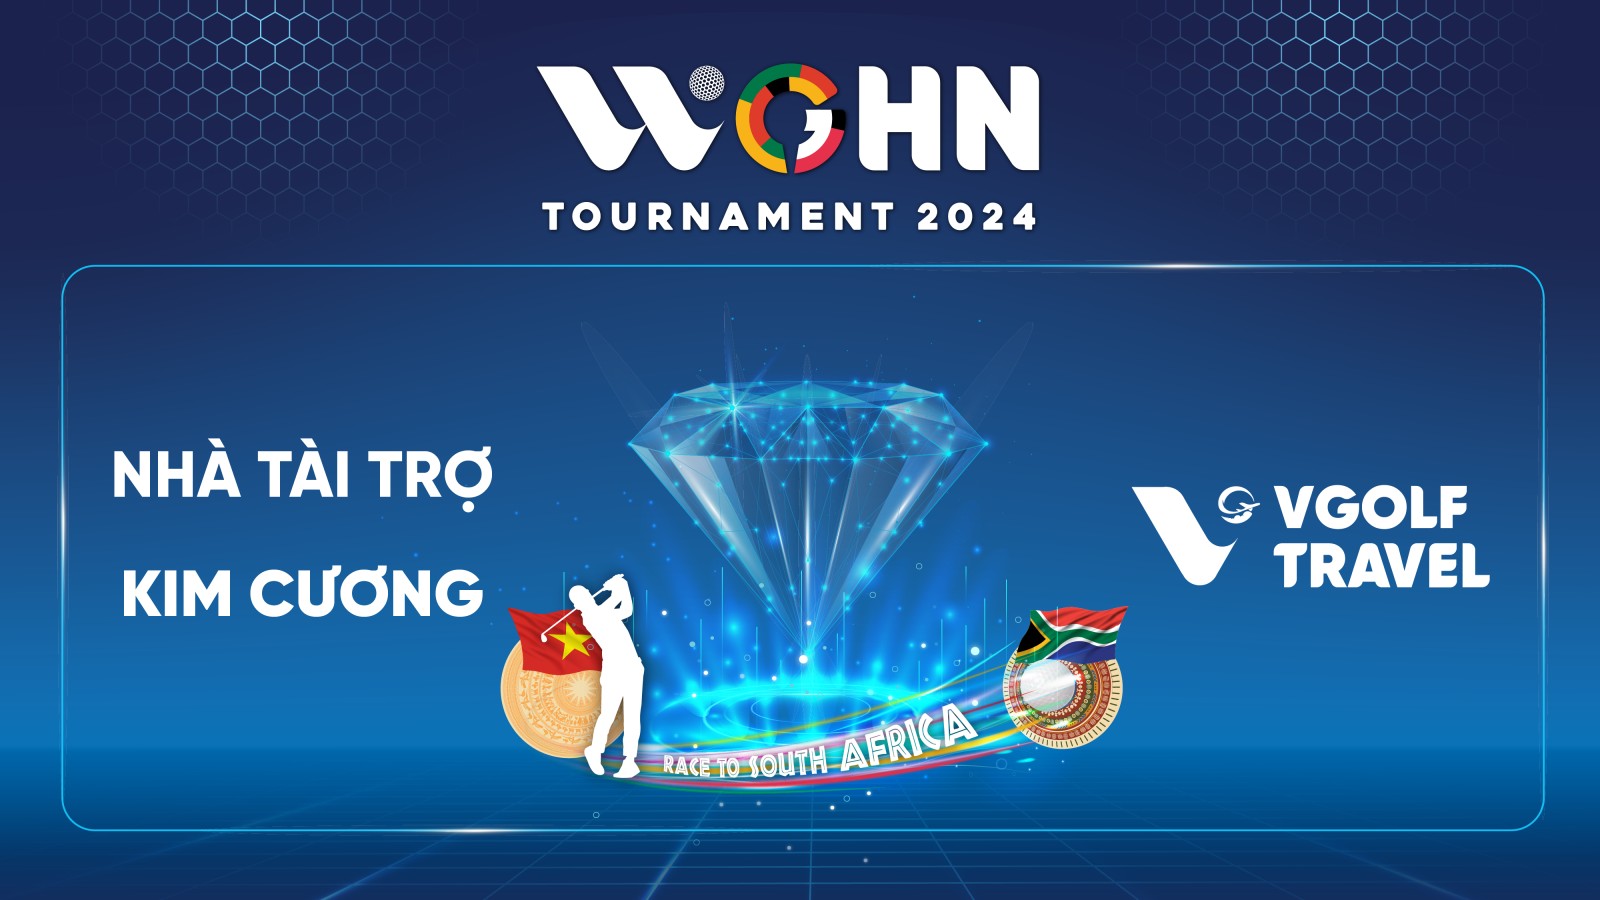 VGolf Travel tự hào là nhà tài trợ Kim cương của WGHN Tournament 2024